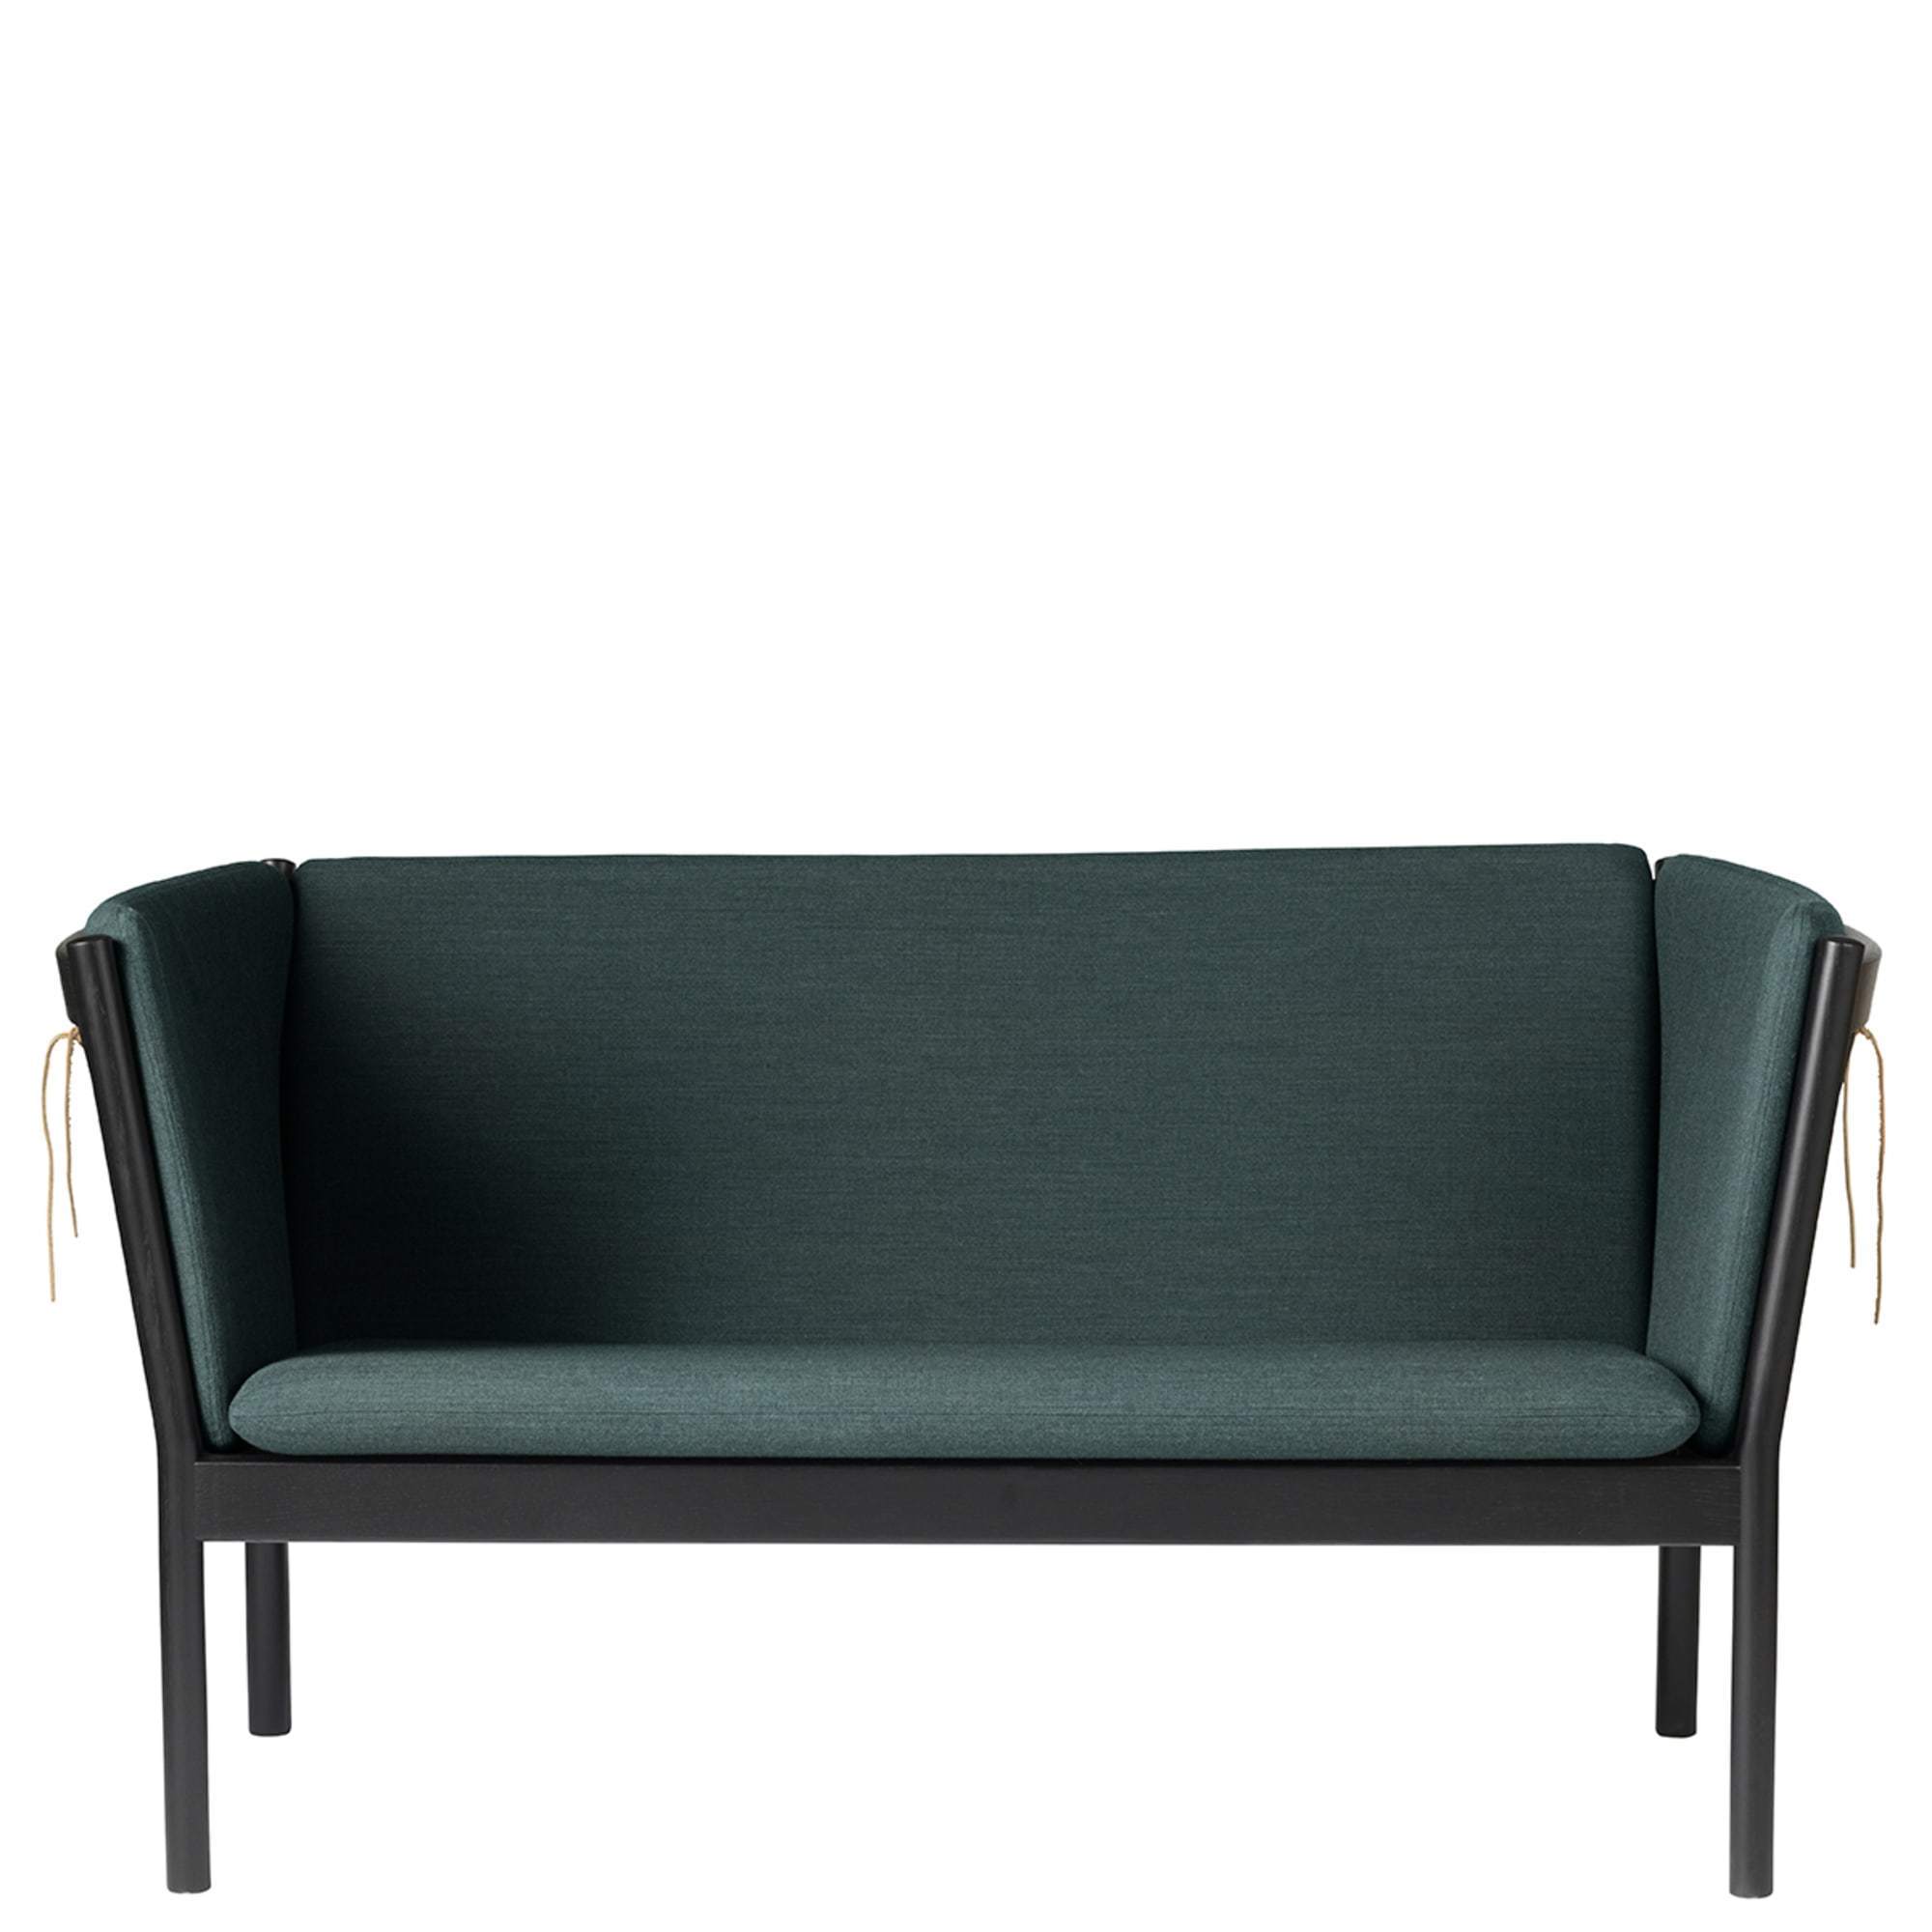 Fdb Møbler J148 2 Person Sofa, chêne noir, tissu vert foncé